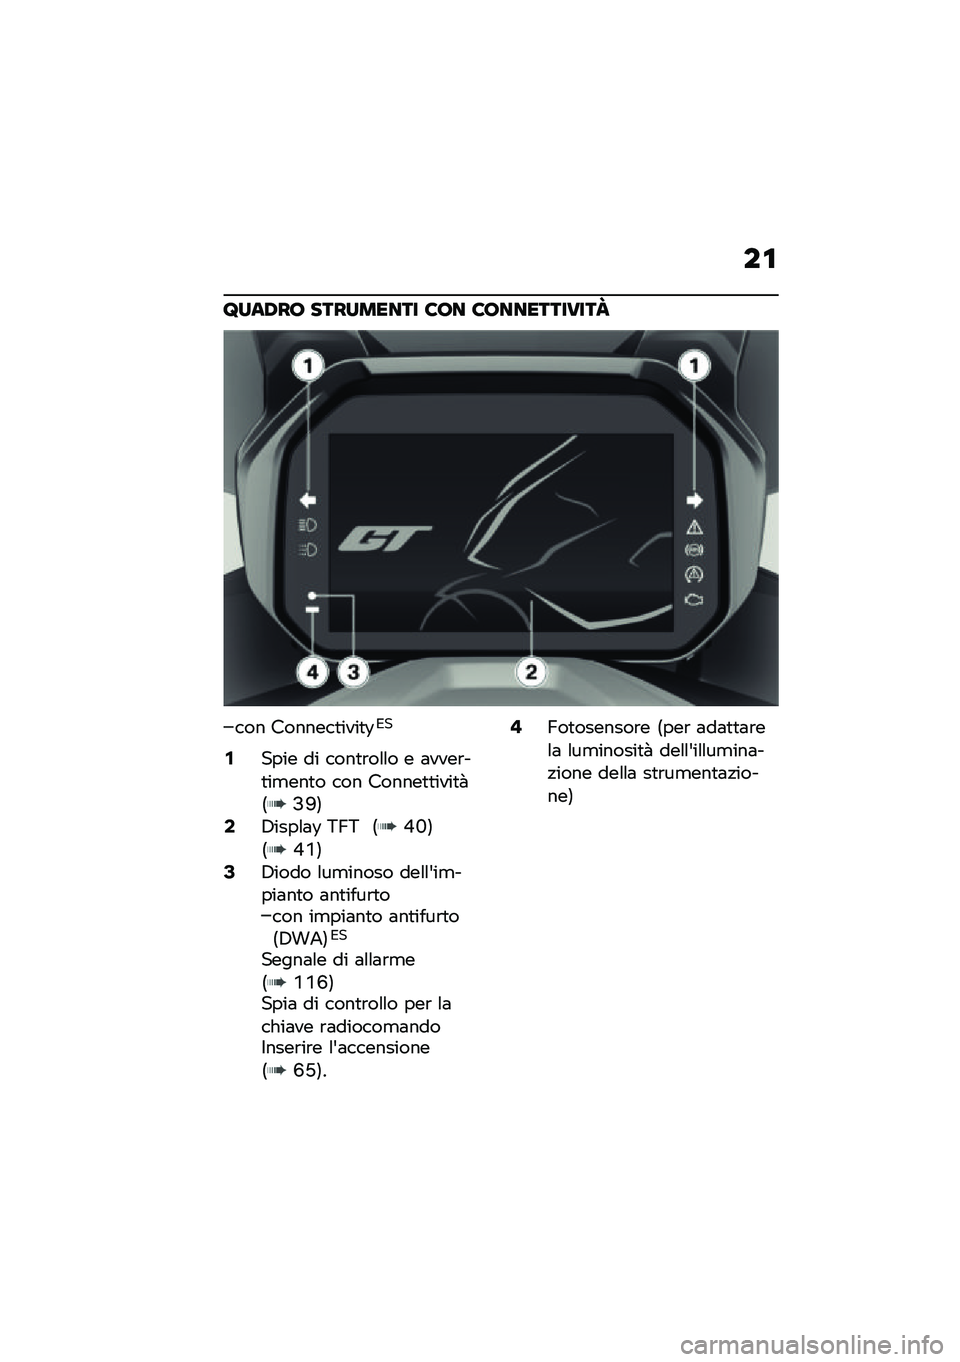 BMW MOTORRAD C 400 GT 2021  Libretto di uso e manutenzione (in Italian) ��\f
�@���,��7 ��������� �6�7� �6�7����������L
��� �������
����
�:�*�
�/���� �� ����
�\b��\f�\f� � �	����\b��
��
���
� ��� ������
�
��